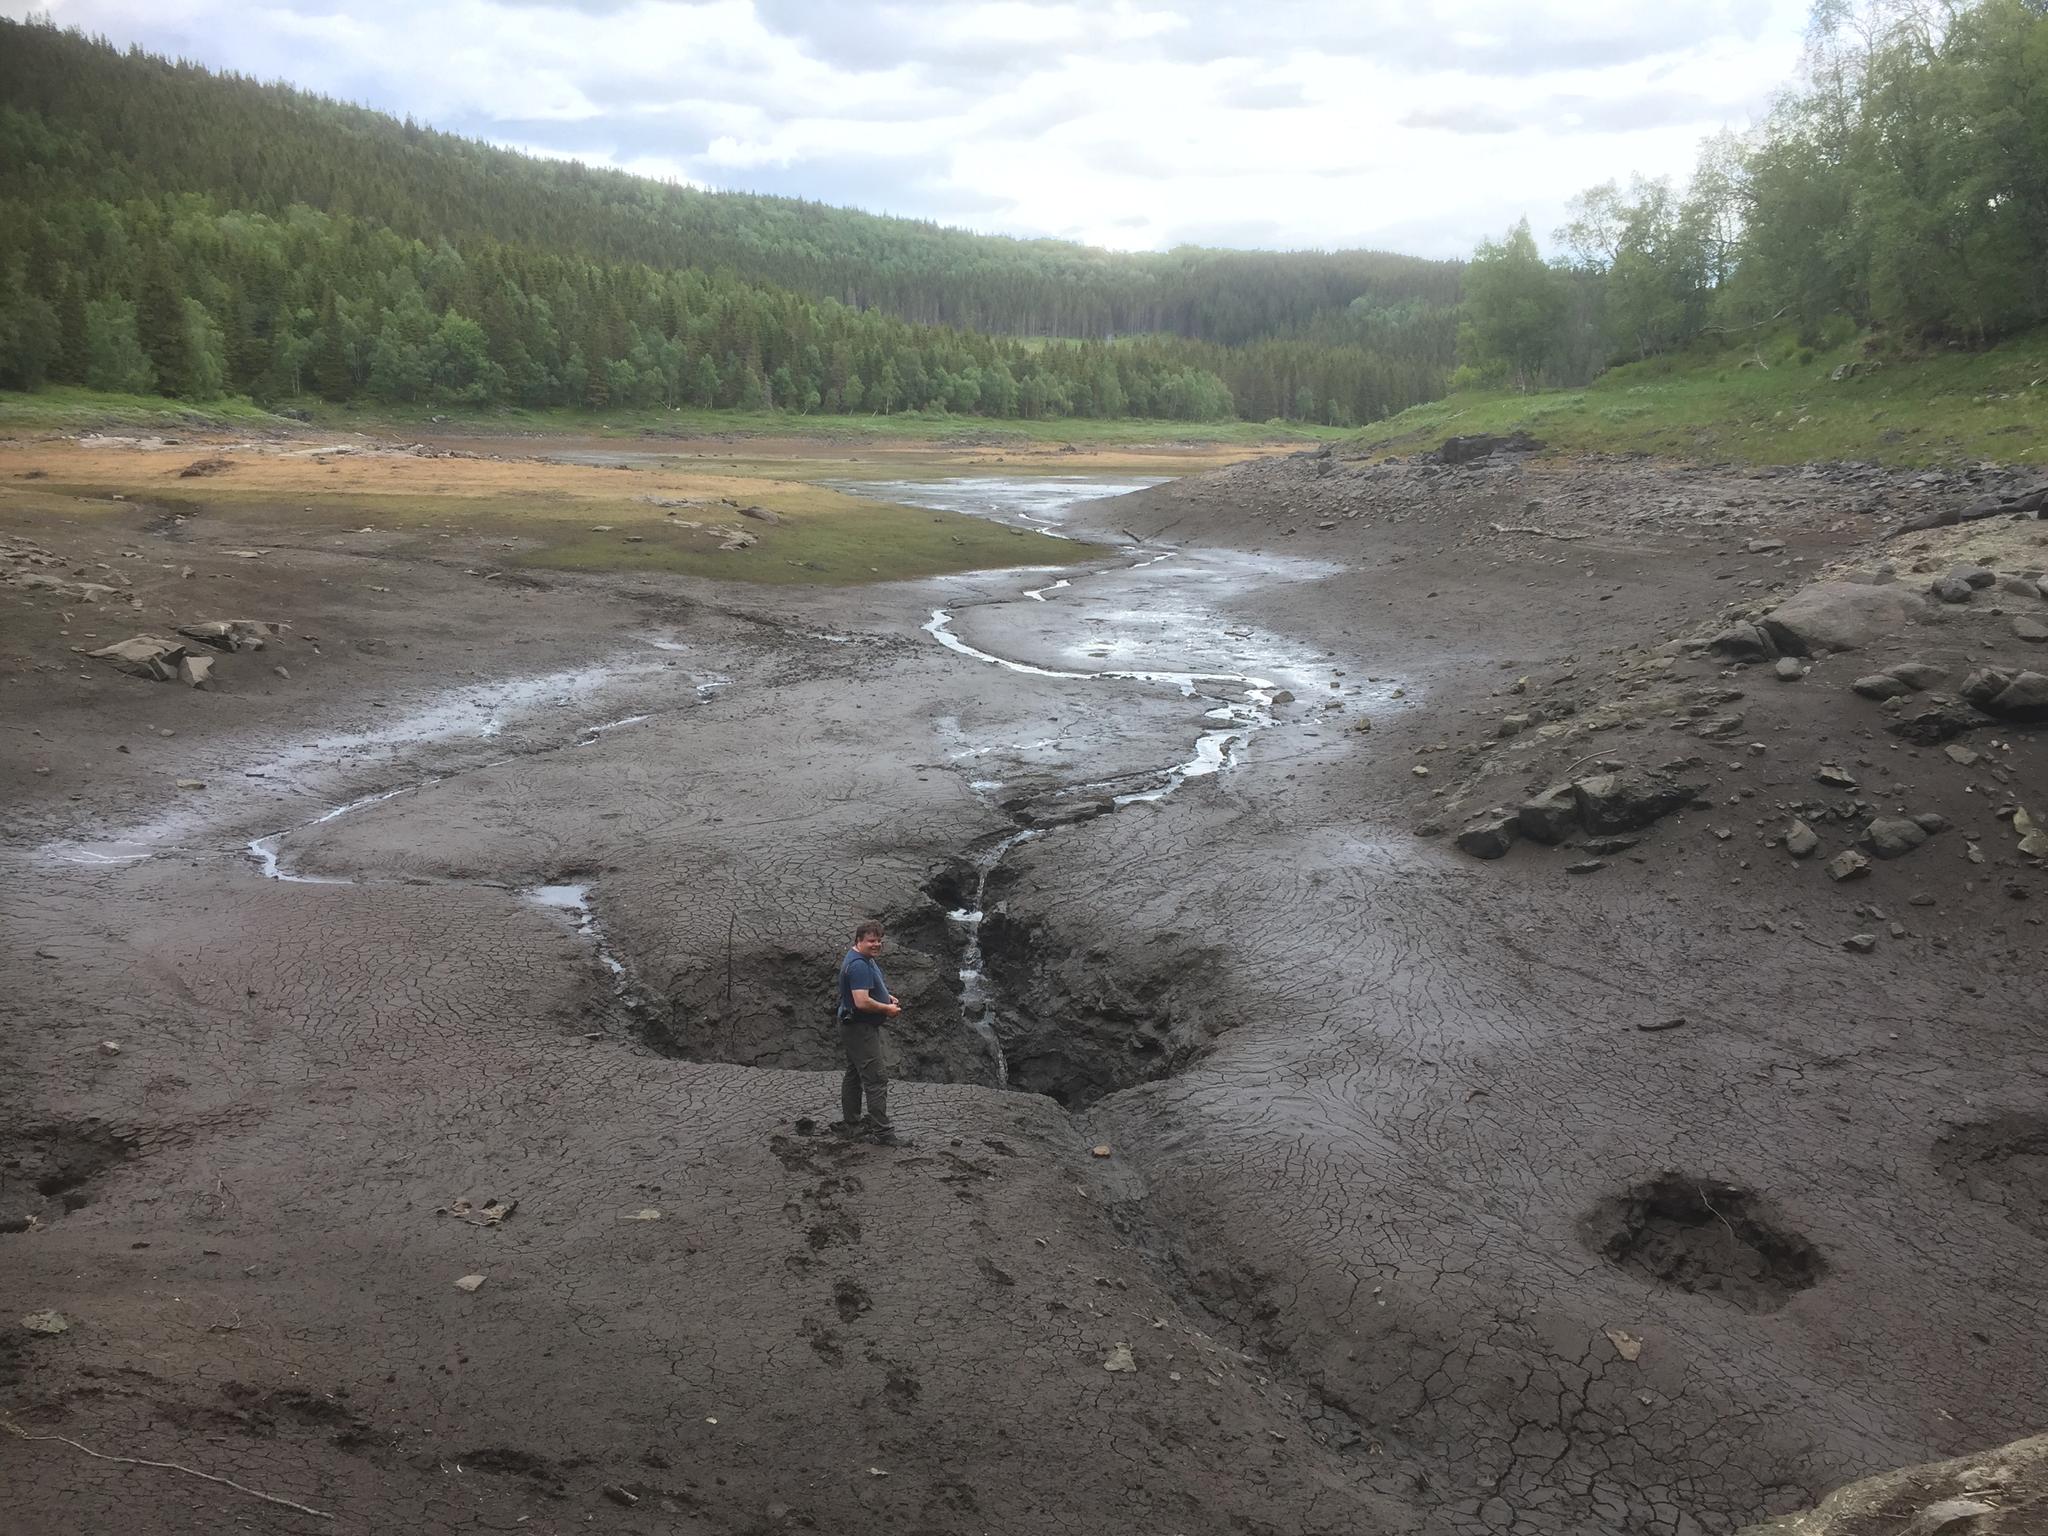 Slik så Engavatnet ut etter tømming i forrige uke. Jan Odvar Nielsen, velfjording og lokal grotteentusiast, opplevde sist at Engavatnet ble tømt i 2014.